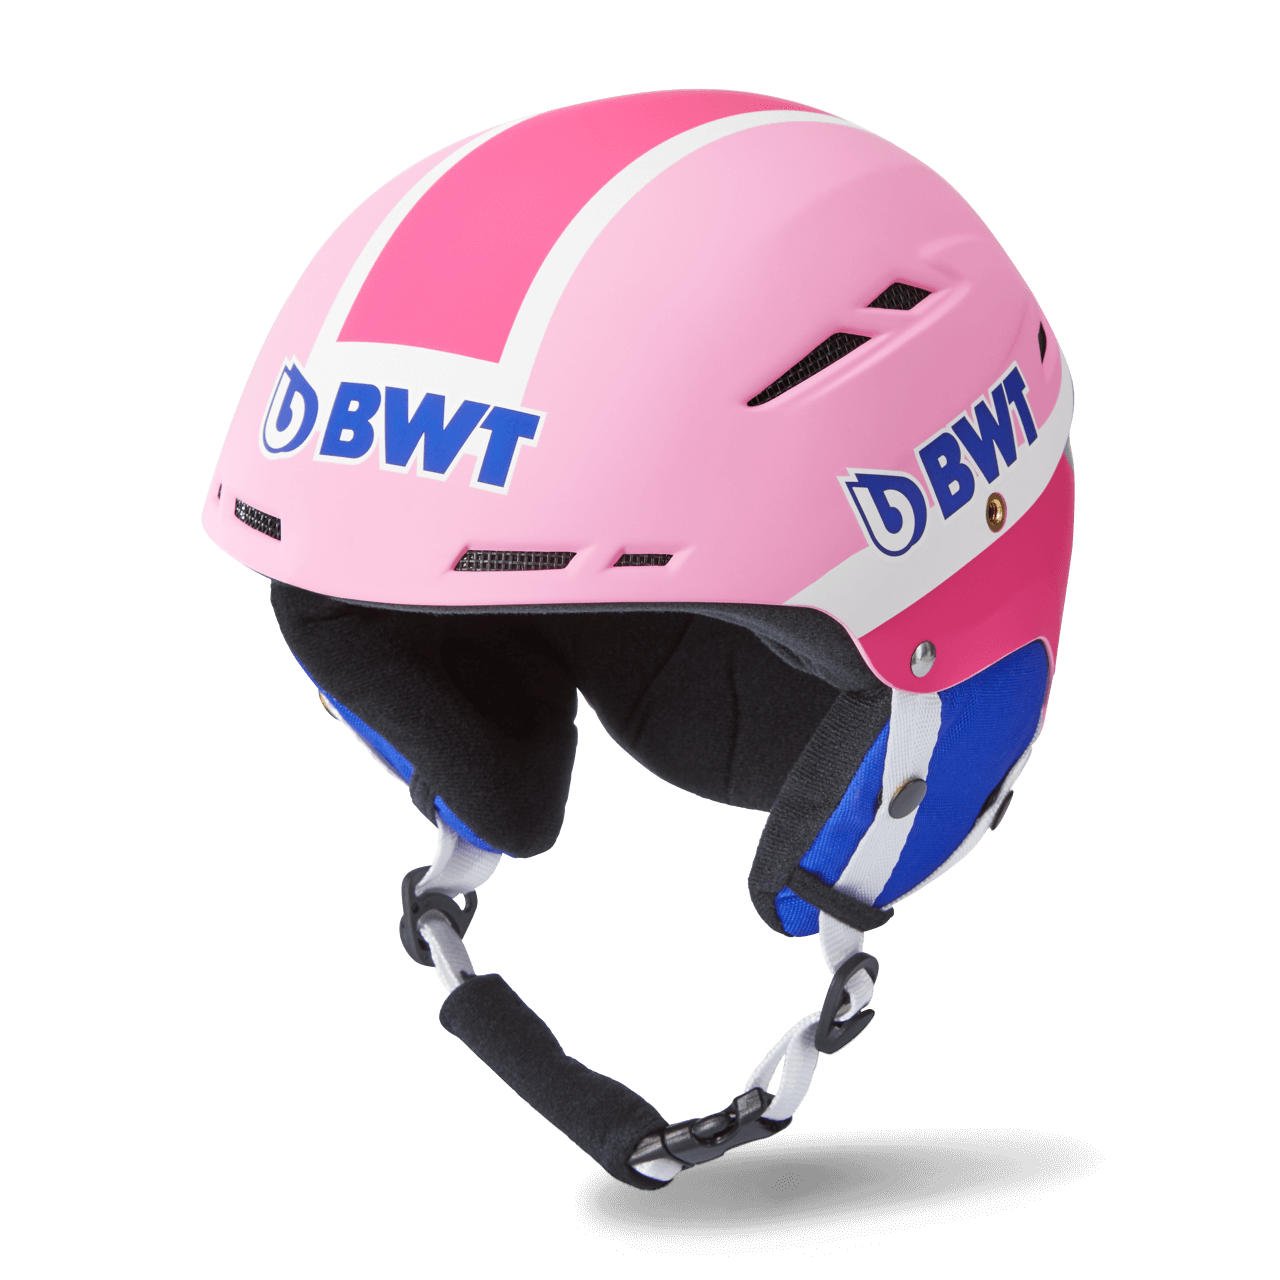 BWT Freeride Skihelm in pink mit blauem BWT Logo